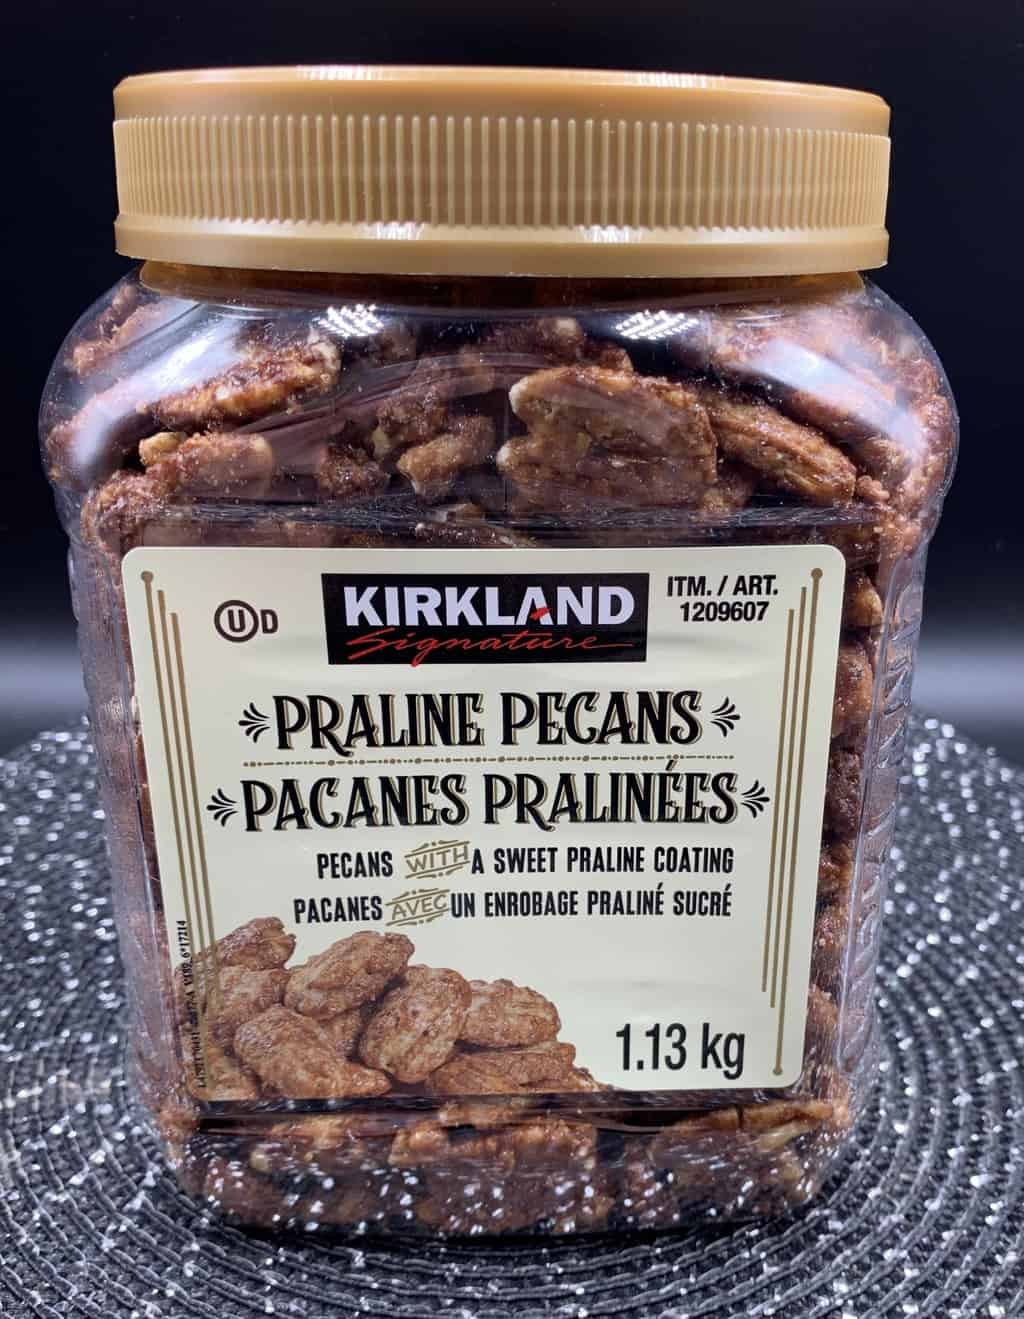 Best Cookie Recipe Using Costco Kirkland Signature Praline Pecans